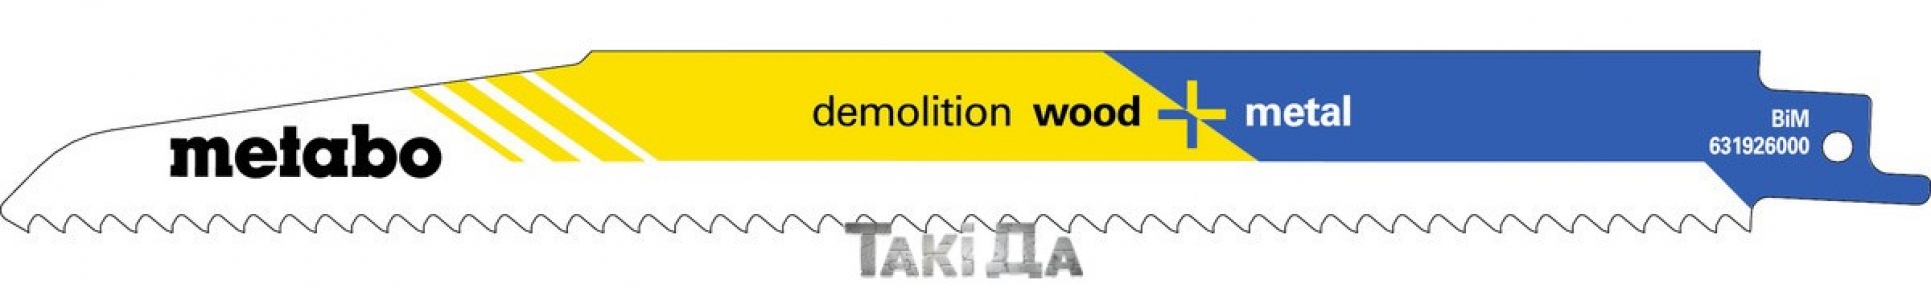 Пильное полотно для сабельной пилы Metabo Demolition Wood+Metal 225x1,6 мм - 5 шт